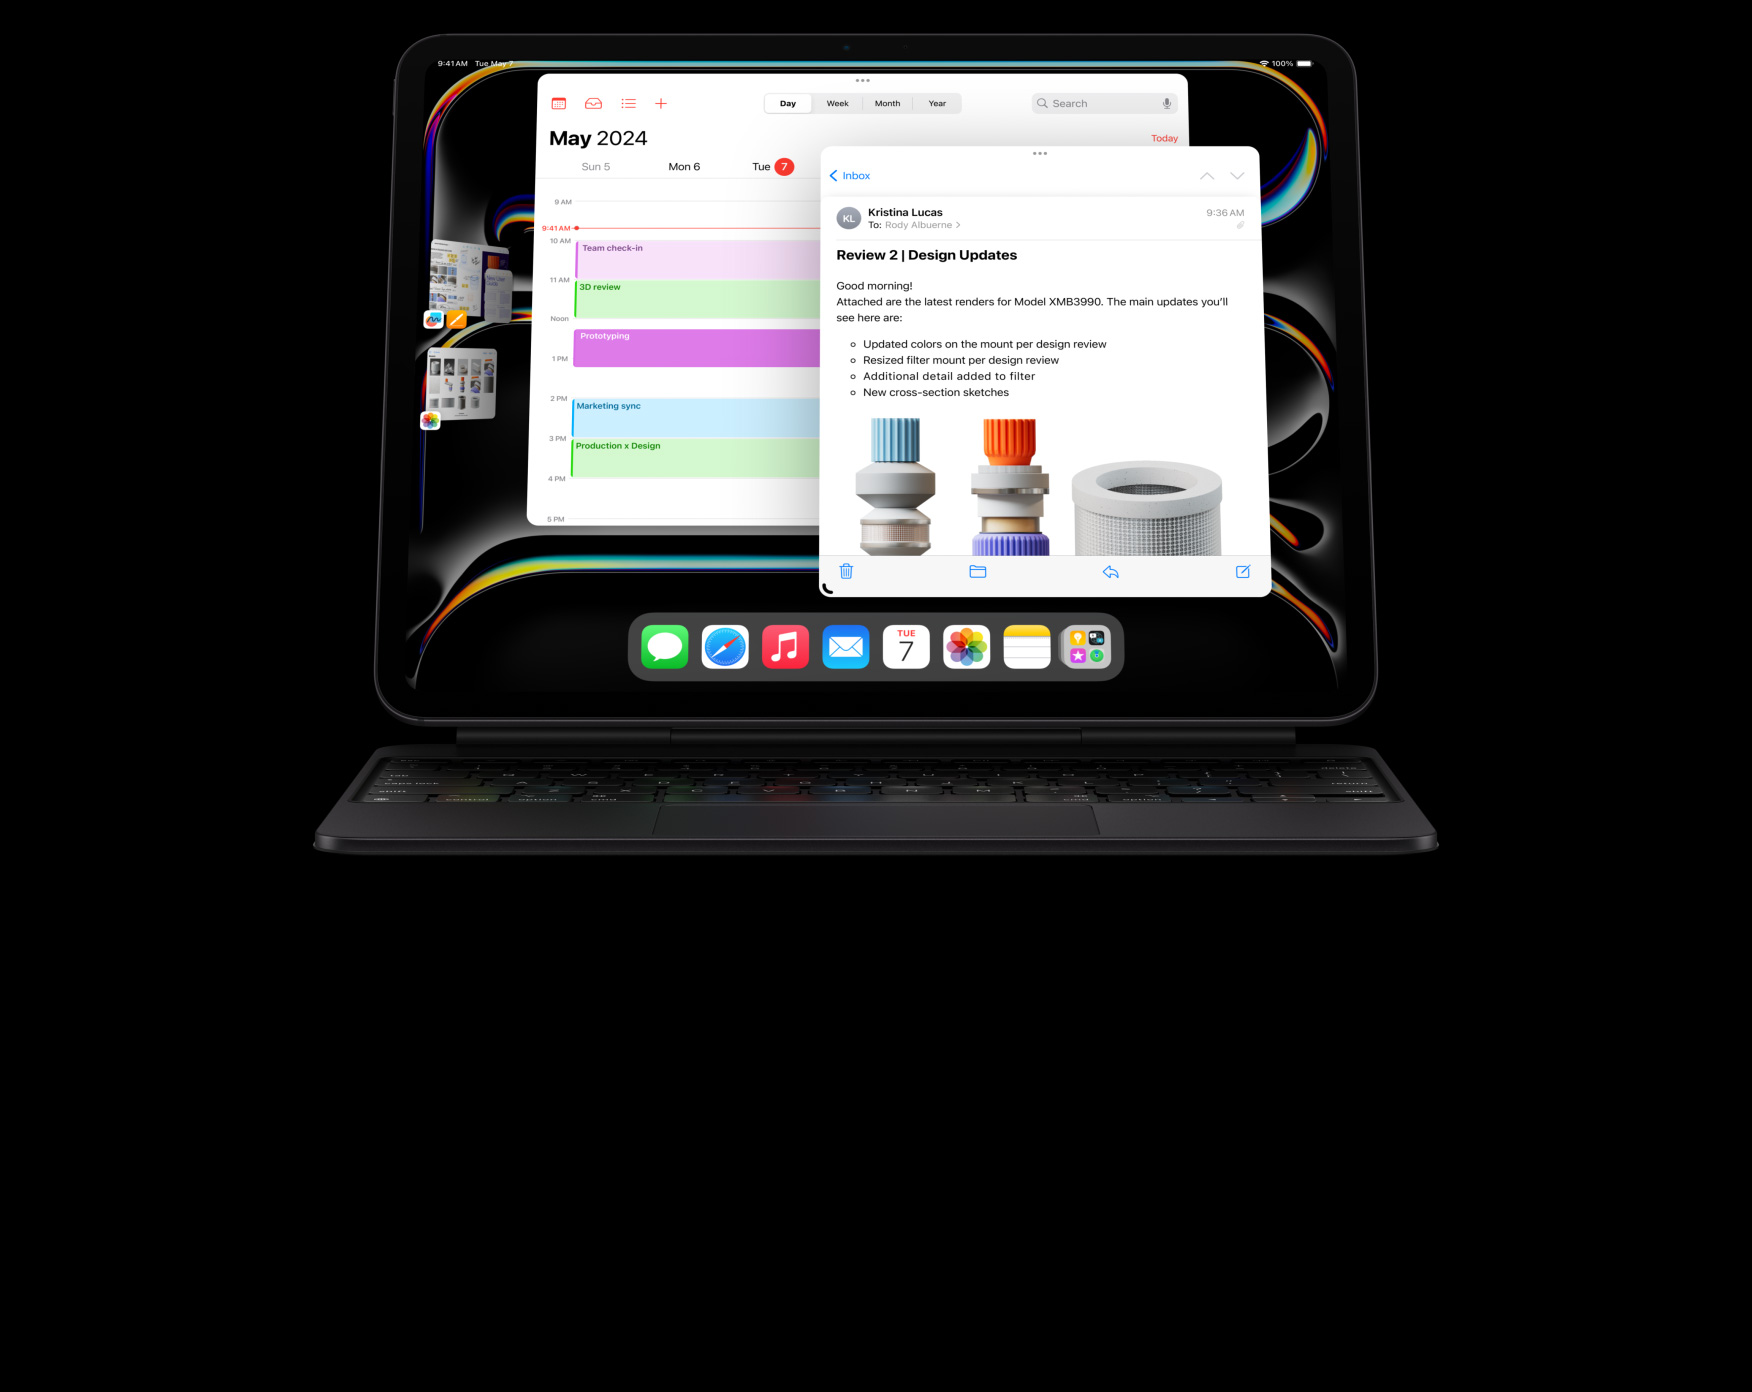 iPad Pro atașat la Magic Keyboard în dispunere orizontală, utilizatorul face multitasking în multiple aplicații deschise